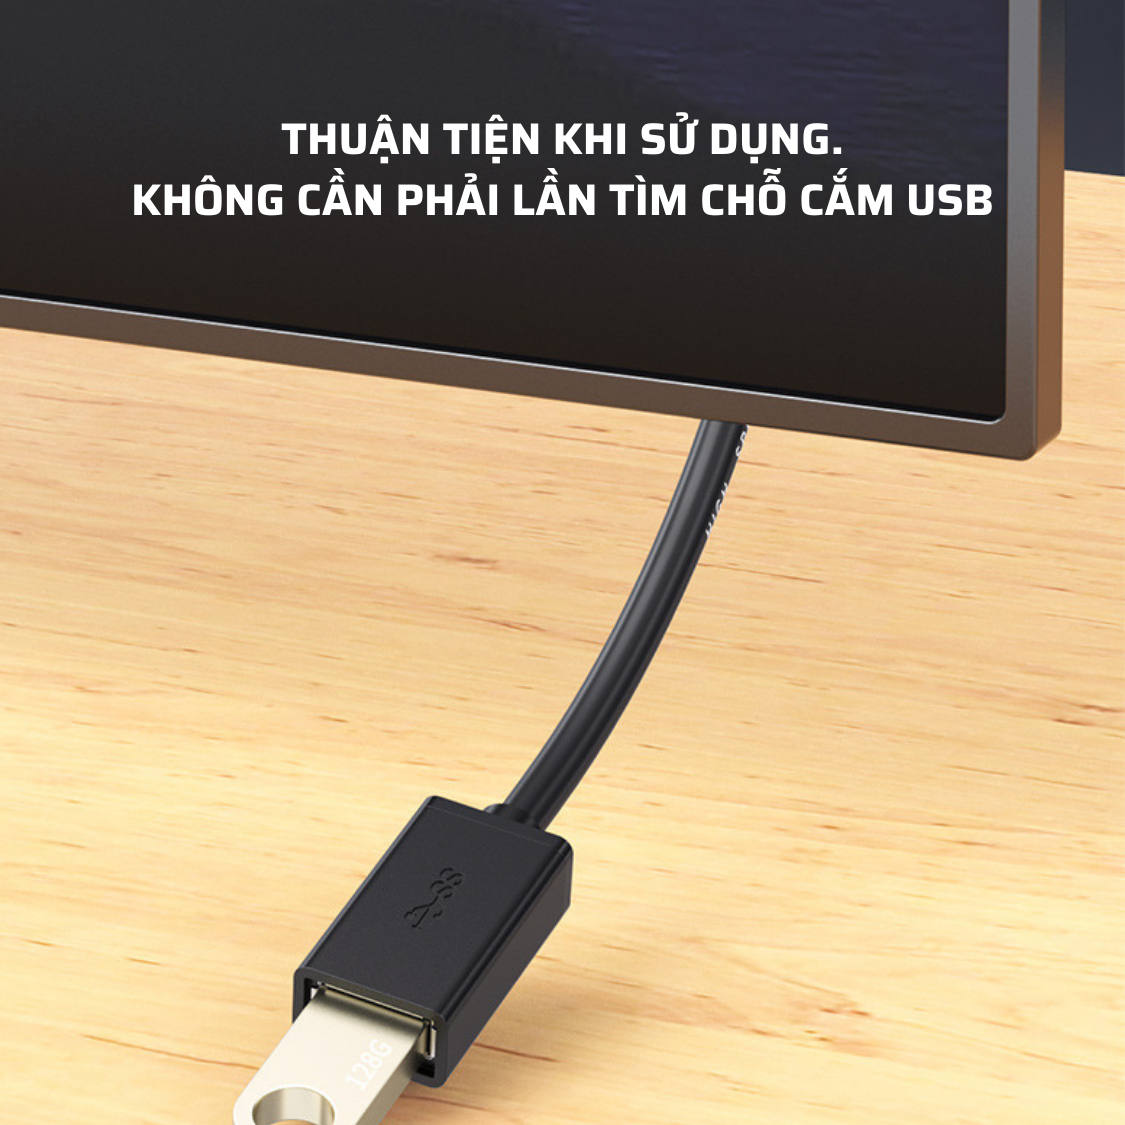 Dây Cáp Nối Dài USB 3.0 Dài 2M  - Hàng Chính Hãng Tamayoko